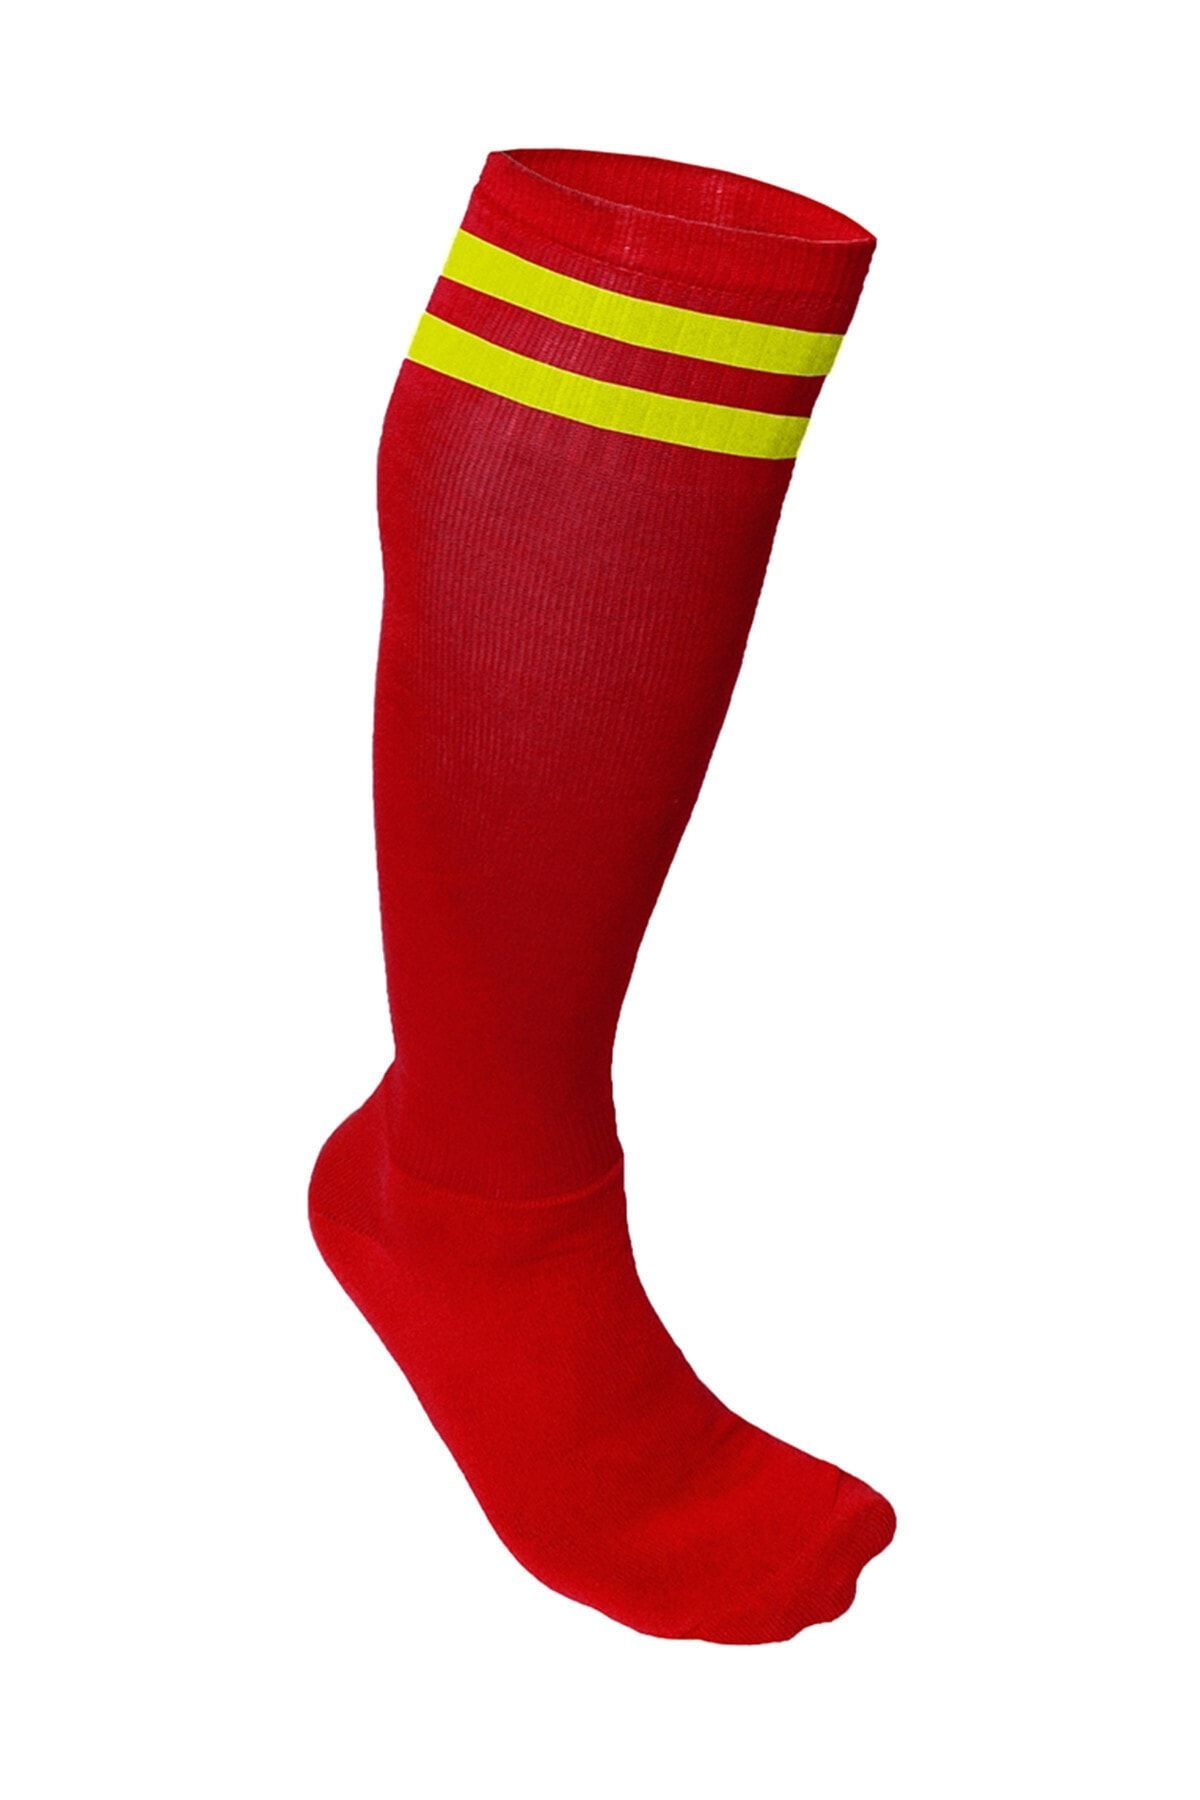 Nacar Süper Futbol Tozluğu-çorabı Kırmızı Sarı